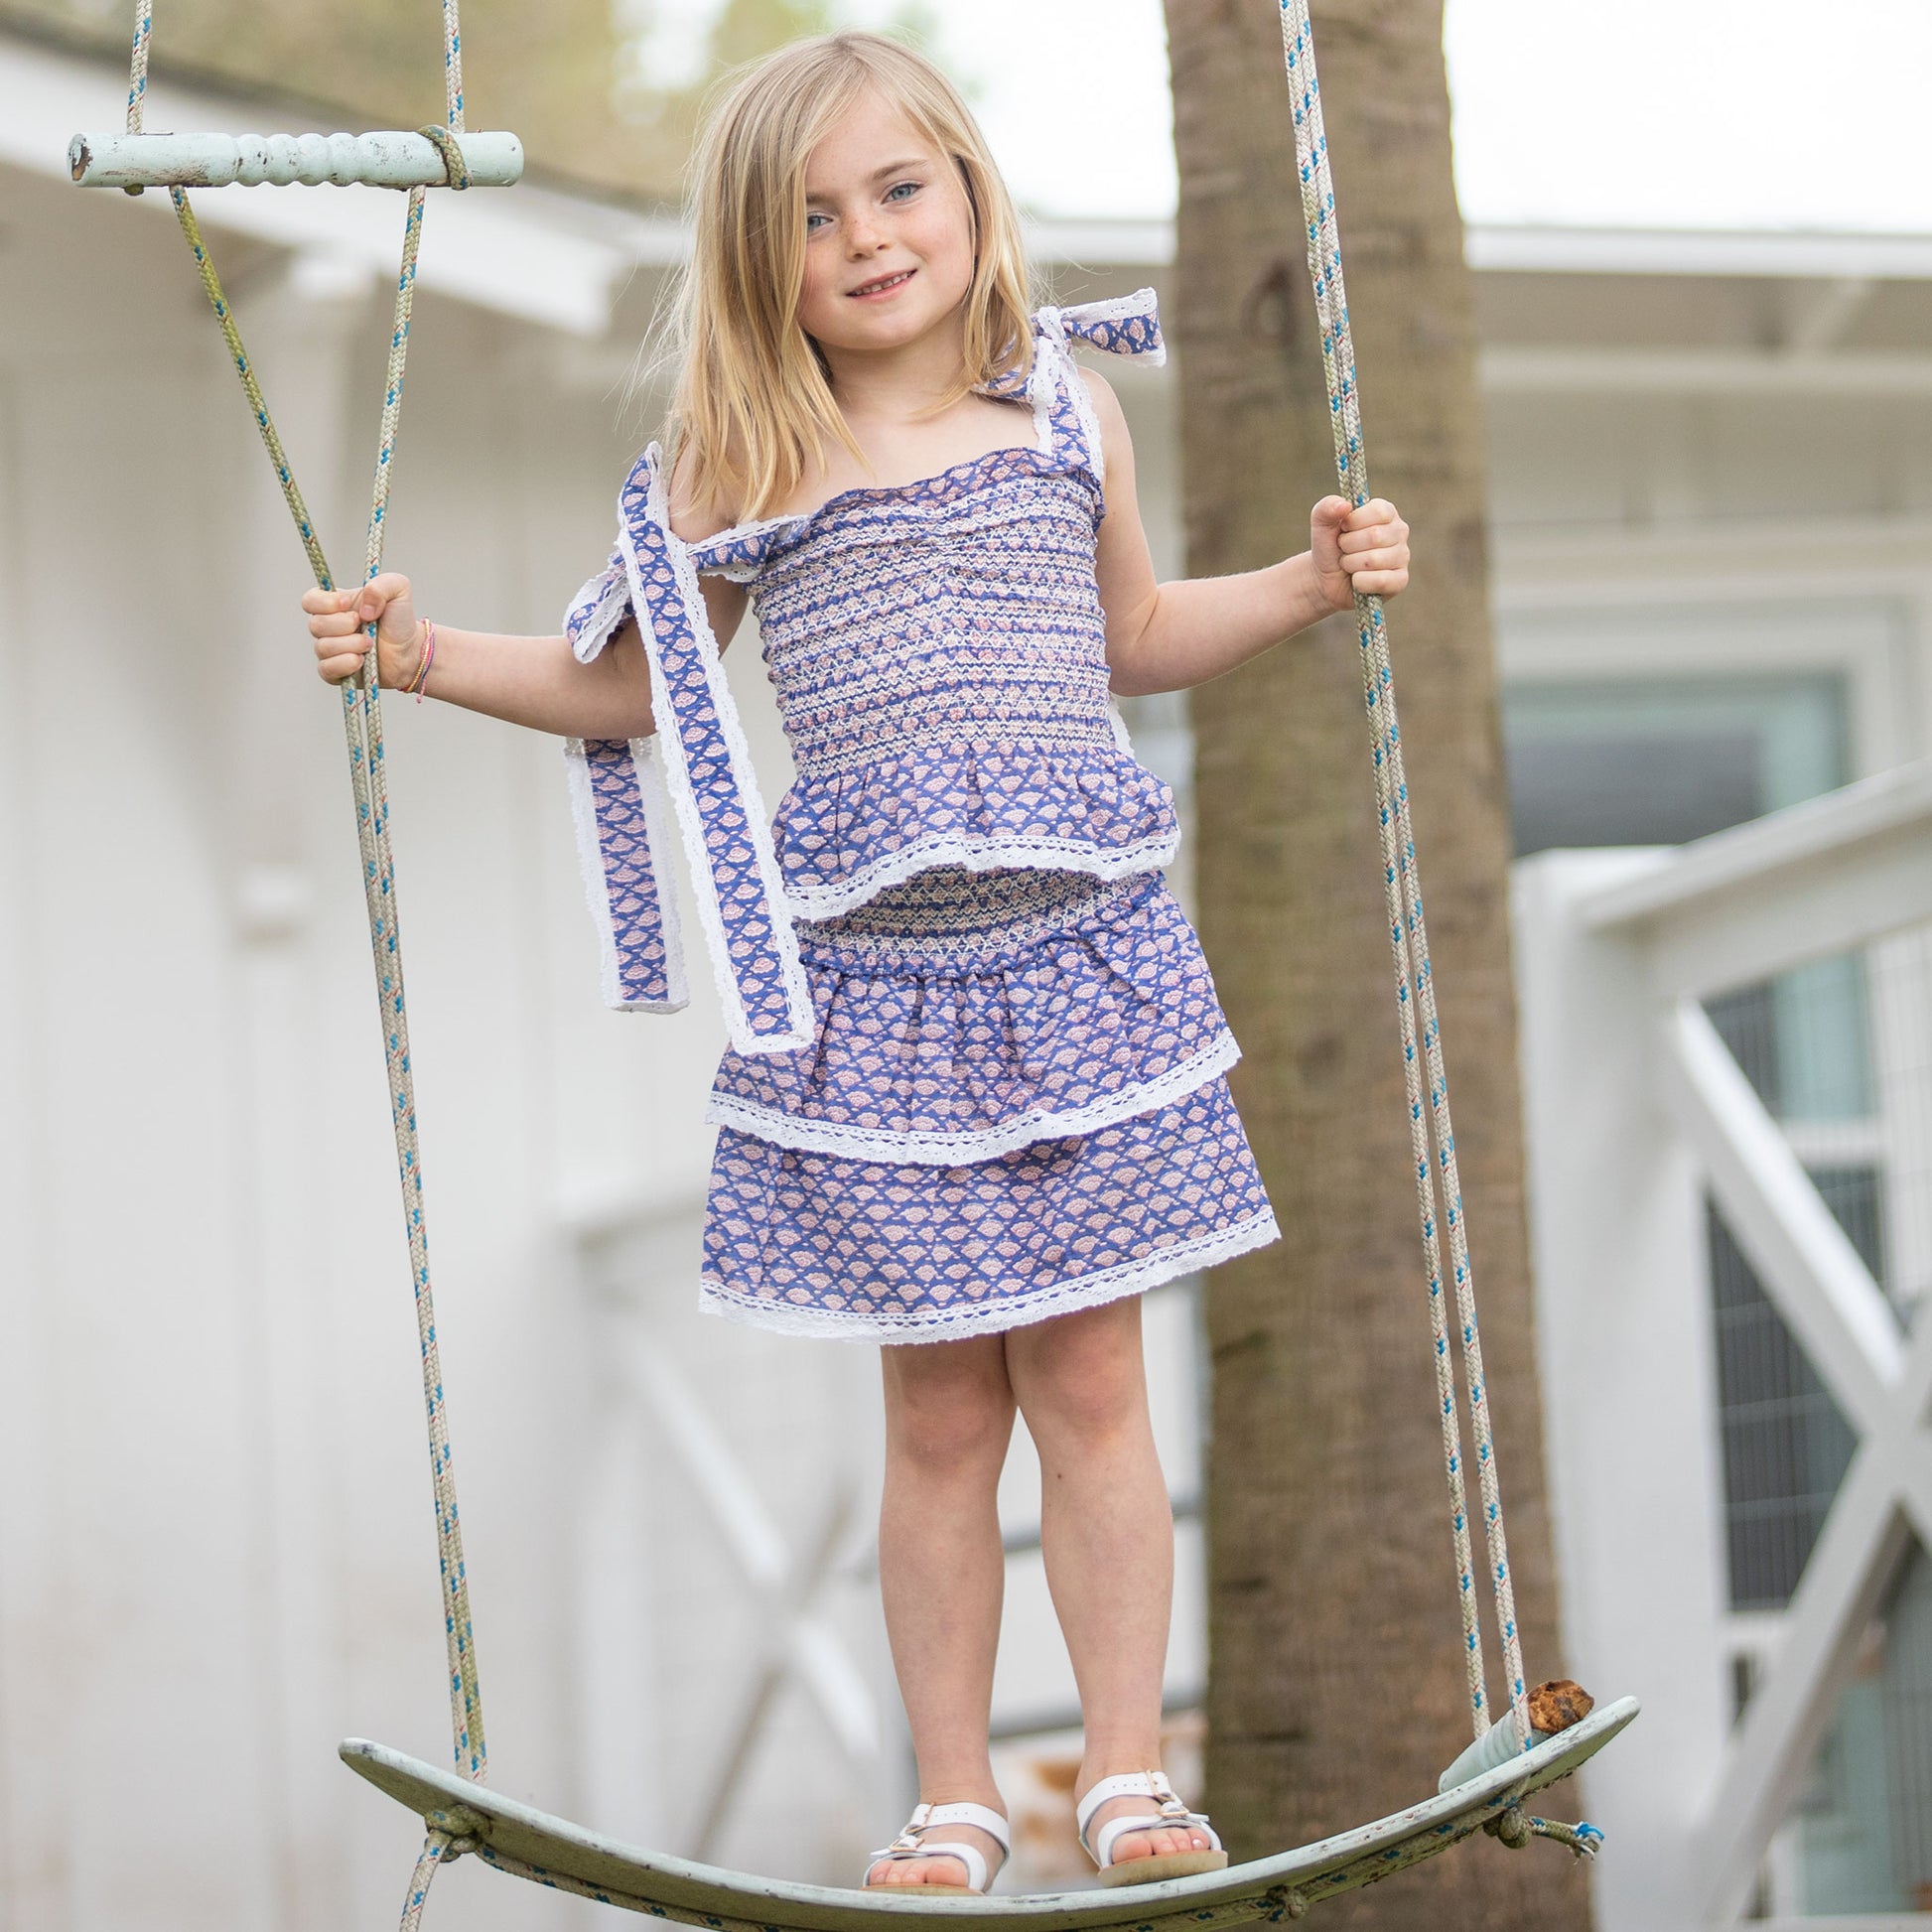 little girl wearingg Bahama Blue Girl's Top swing on a swurfer